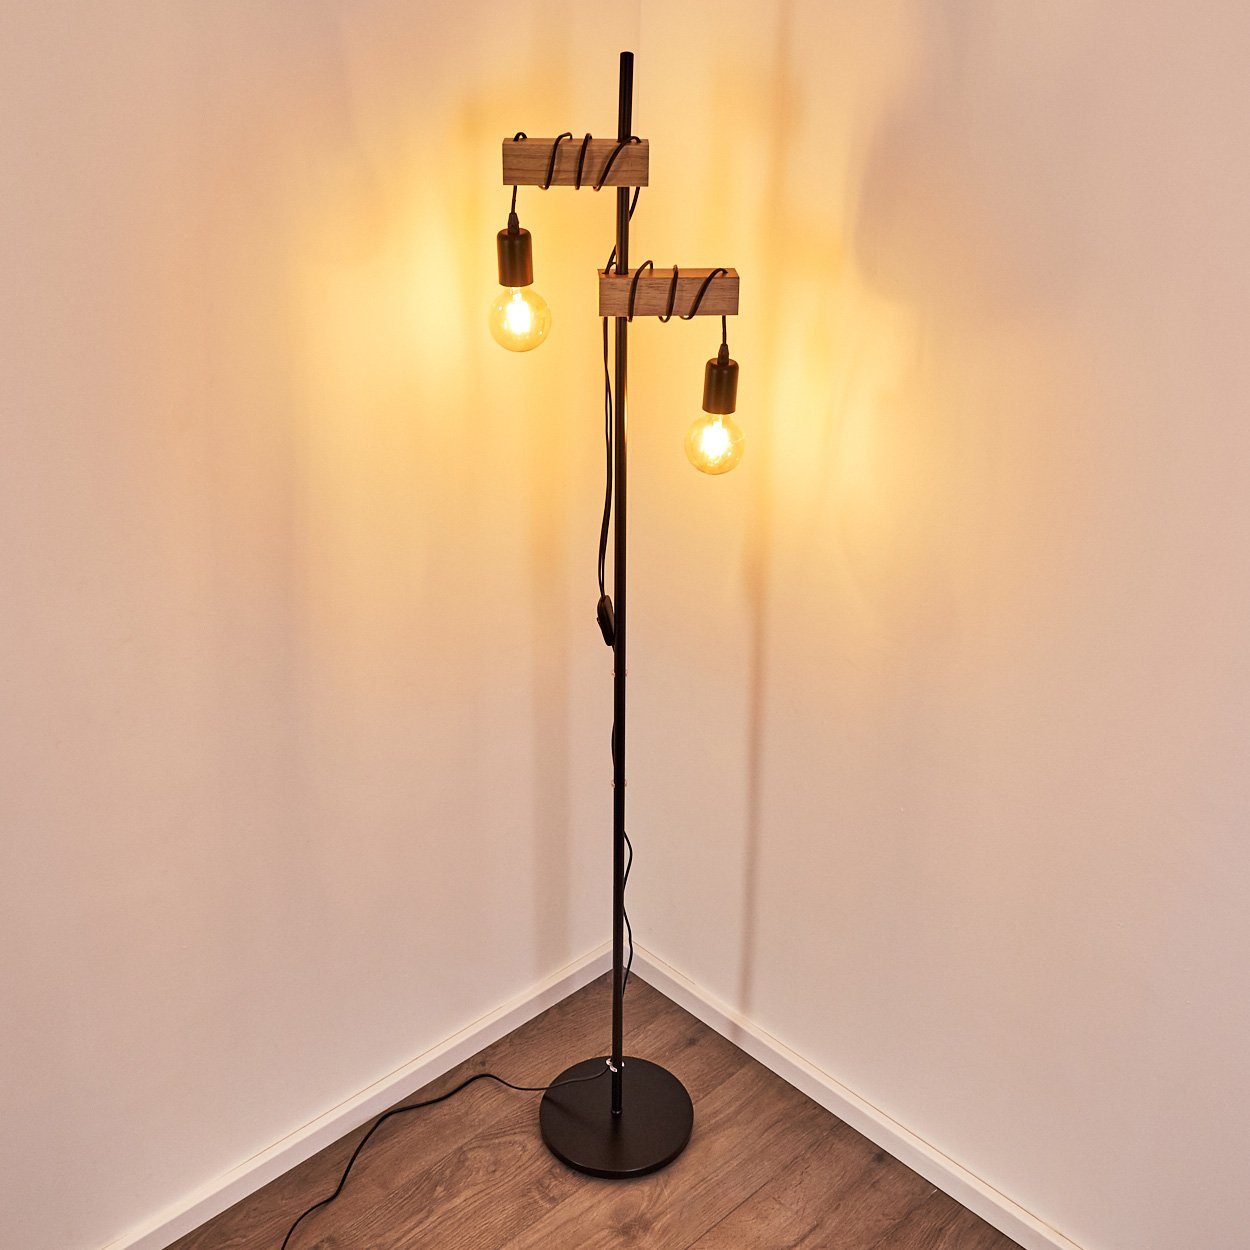 Schlaf hofstein Lampen Zimmer Stand Steh Vintage Wohn Boden schwarz/Holz Loft Stehlampe